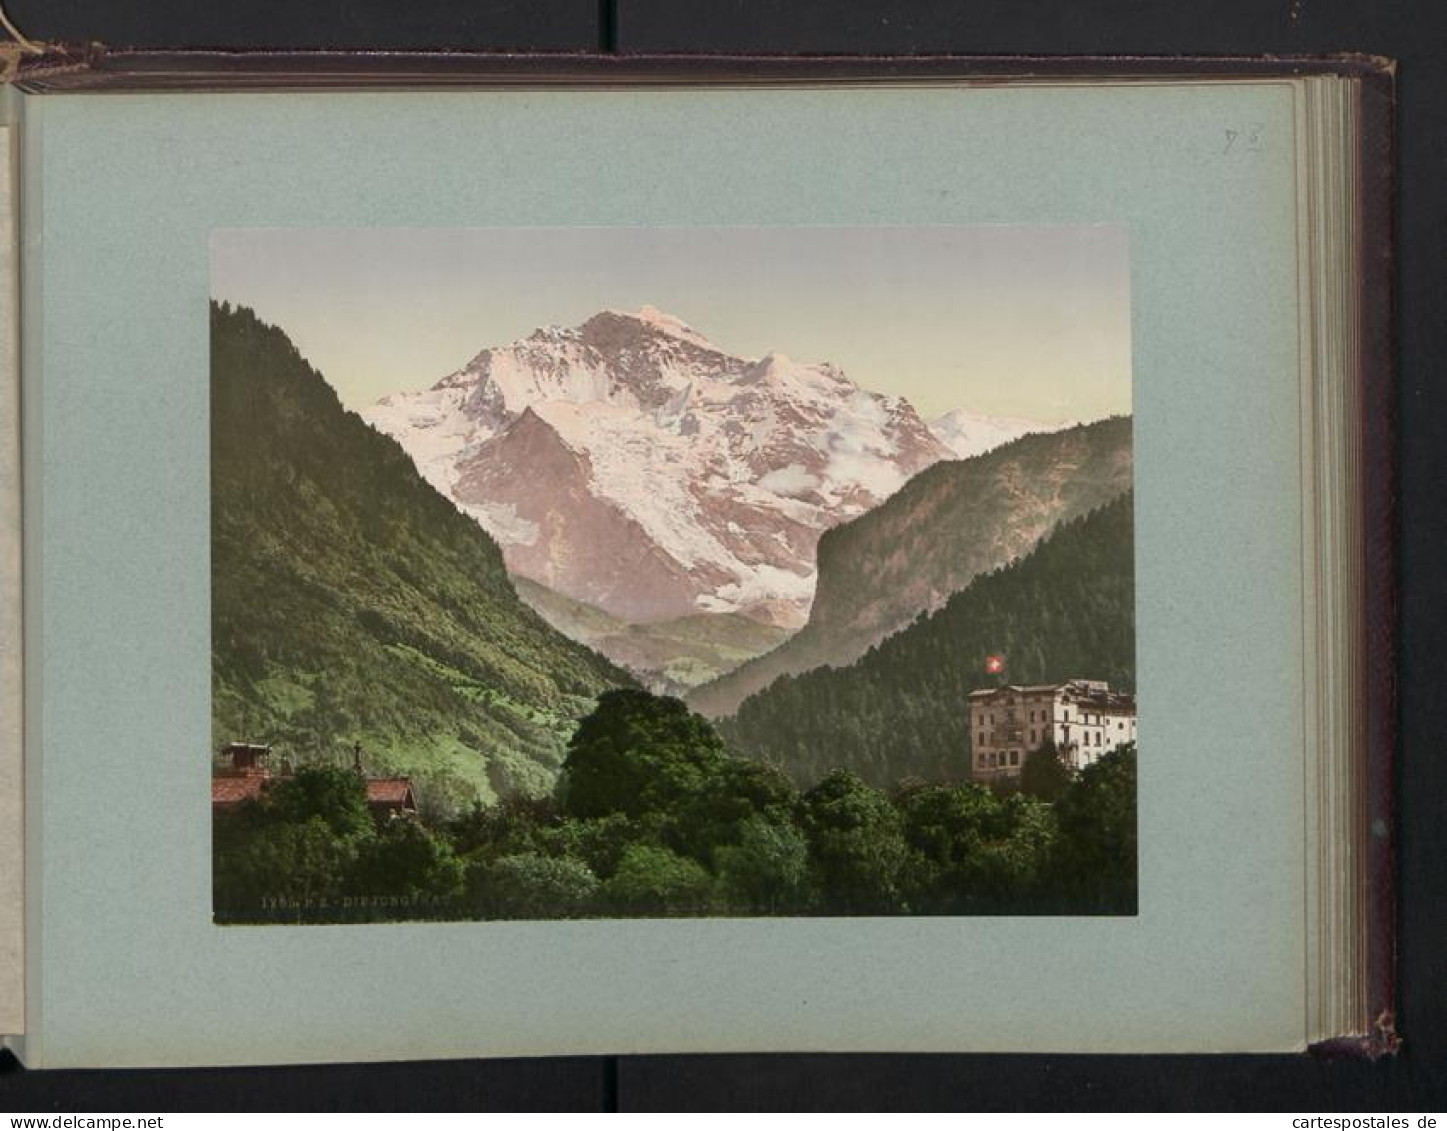 Fotoalbum mit 38 Fotografien, Ansicht Rapallo, Südtirol, Gletscher, Panorama vom Kleinboden, Gardasee 